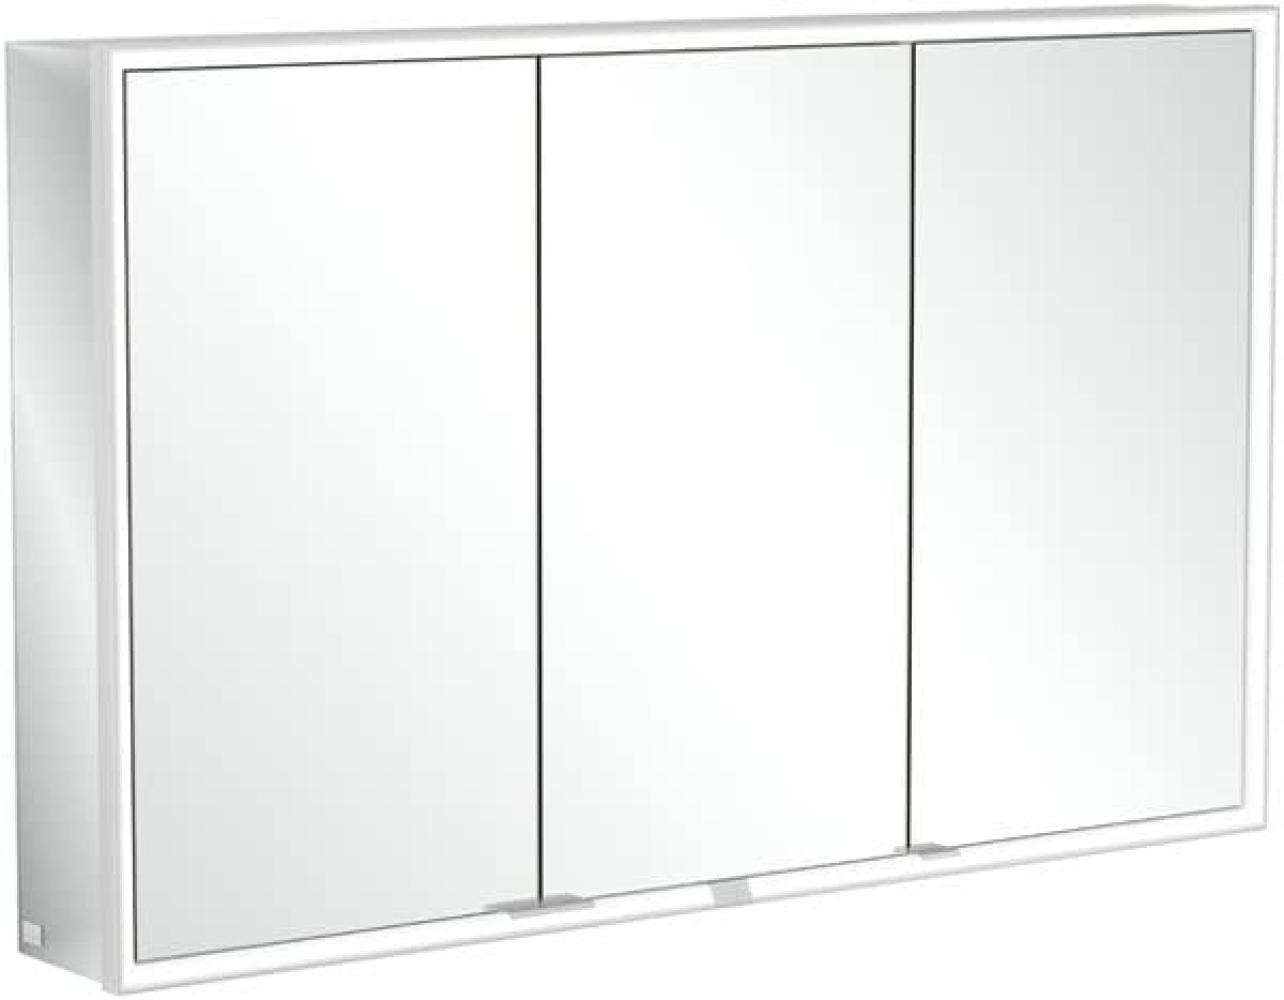 Villeroy & Boch My View Now, Spiegelschrank für Aufputz mit Beleuchtung, 1200x750x168 mm, mit Sensordimmer, 3 Türen, A45512 - A4551200 Bild 1